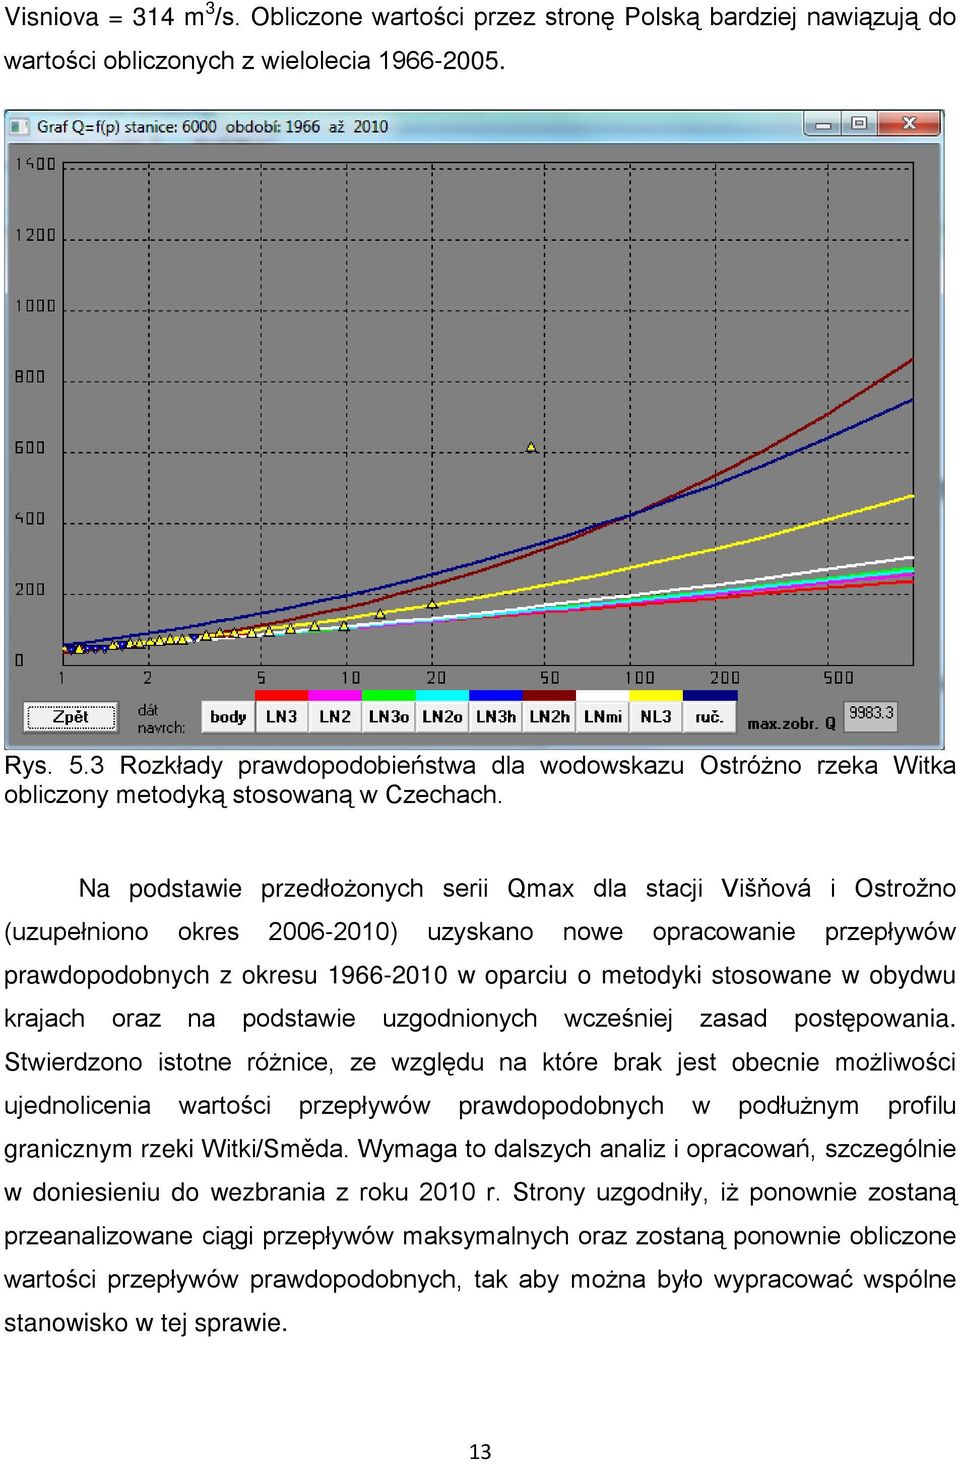 Na podstawie przedłożonych serii Qmax dla stacji Višňová i Ostrožno (uzupełniono okres 2006-2010) uzyskano nowe opracowanie przepływów prawdopodobnych z okresu 1966-2010 w oparciu o metodyki